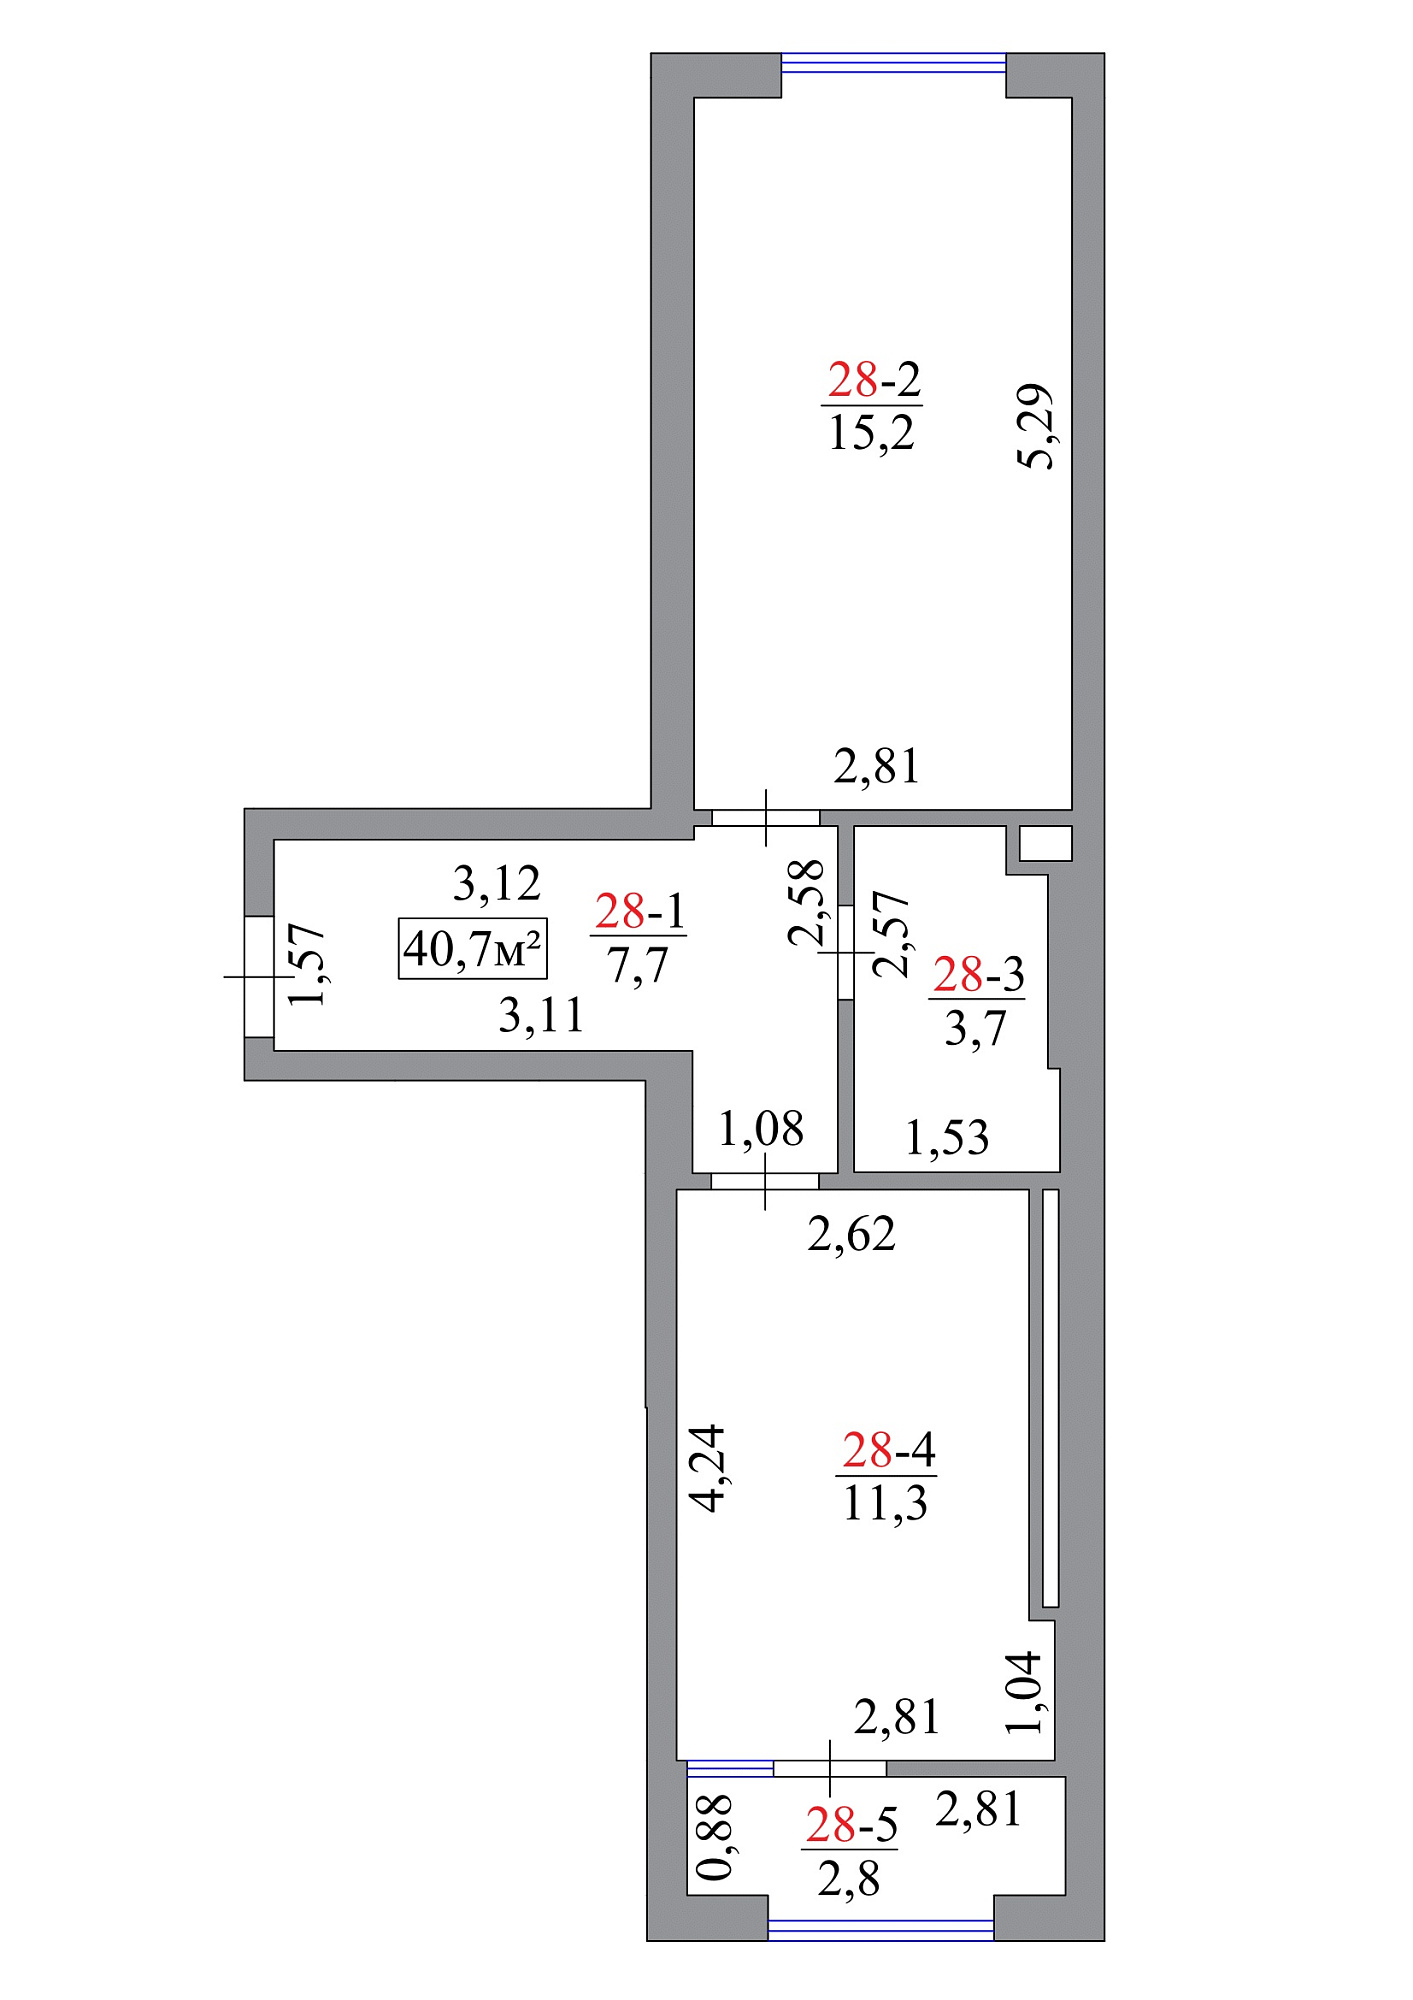 Планировка 1-к квартира площей 40.7м2, AB-07-03/0025б.